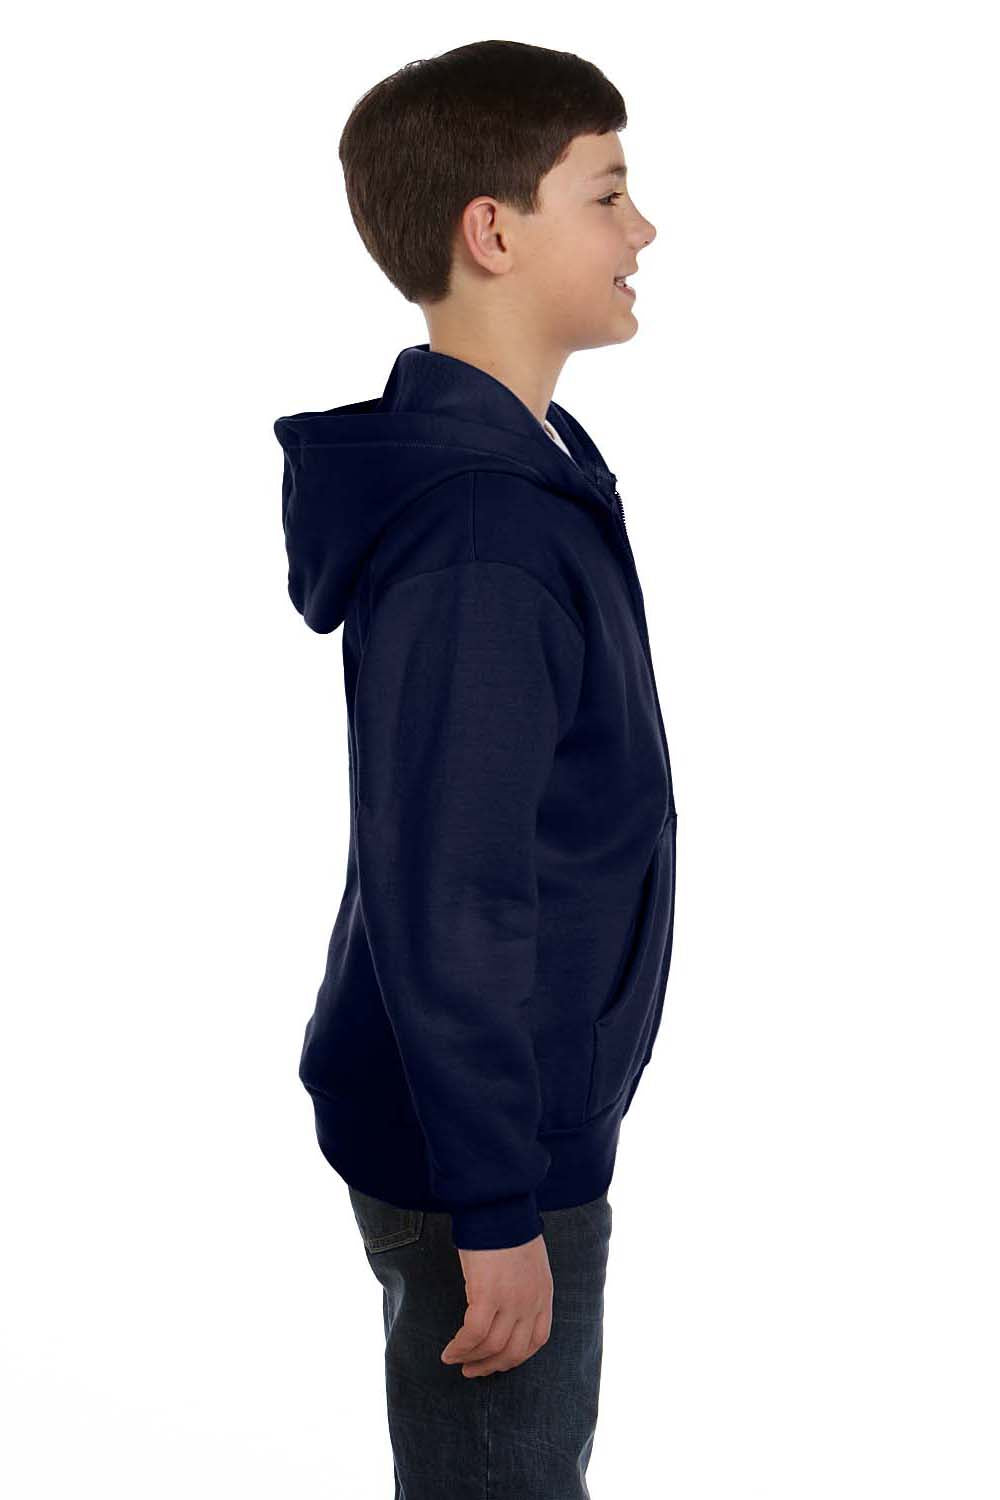 Hanes P480 Youth EcoSmart Print Pro XP Full Zip Hooded Sweatshirt Hoodie Navy Blue Side